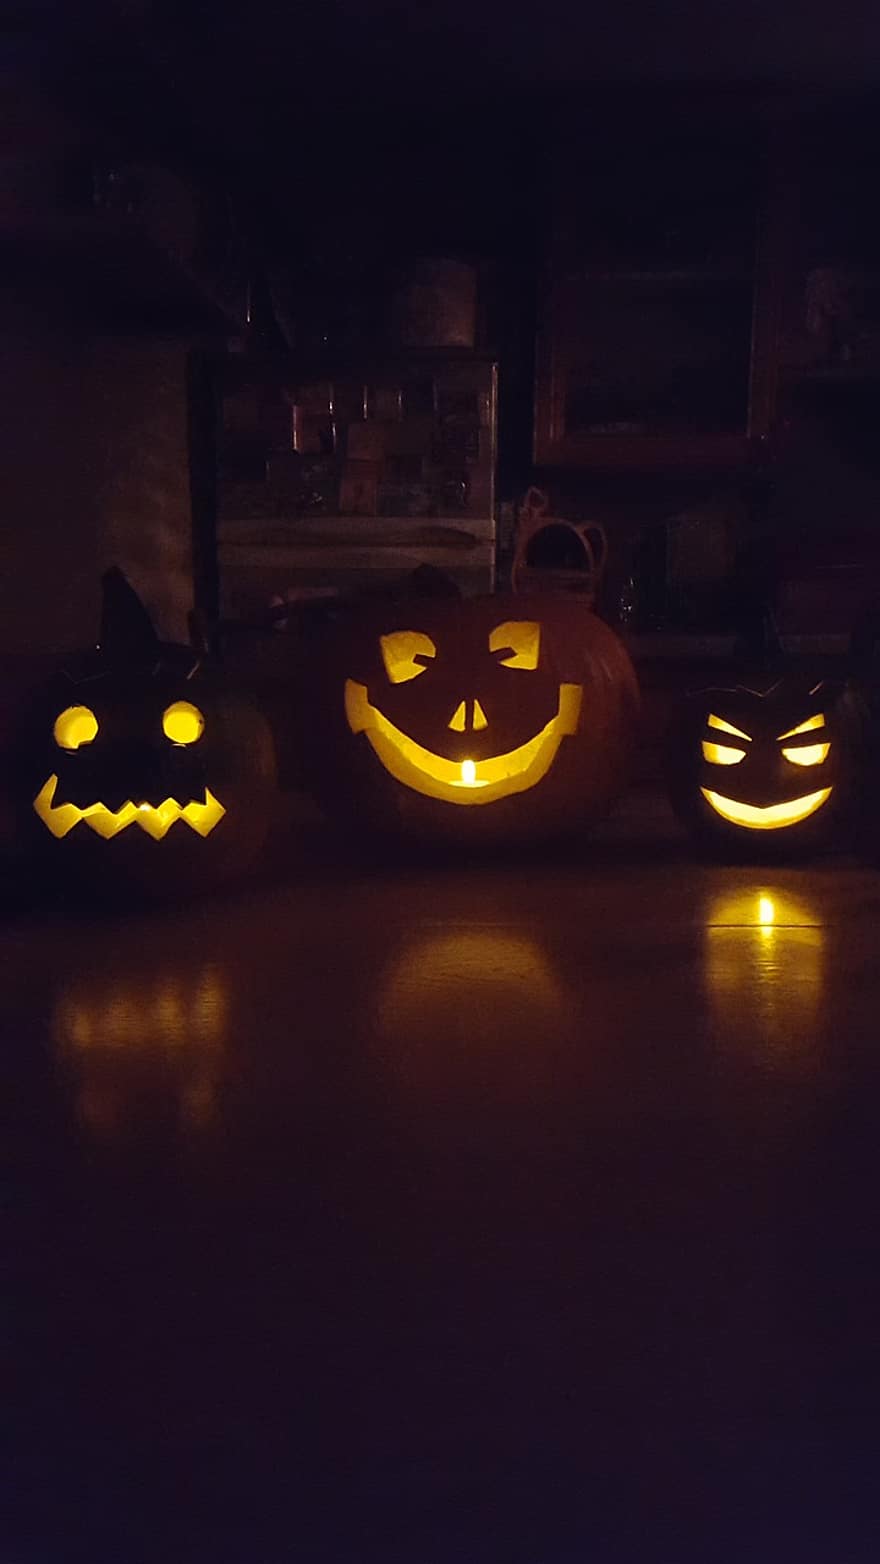 Jack-o-lanterns, Pumpkins, Halloween, Carved Pumpkins, Pumpkin Lanterns, Spooky, Decoration, Decor